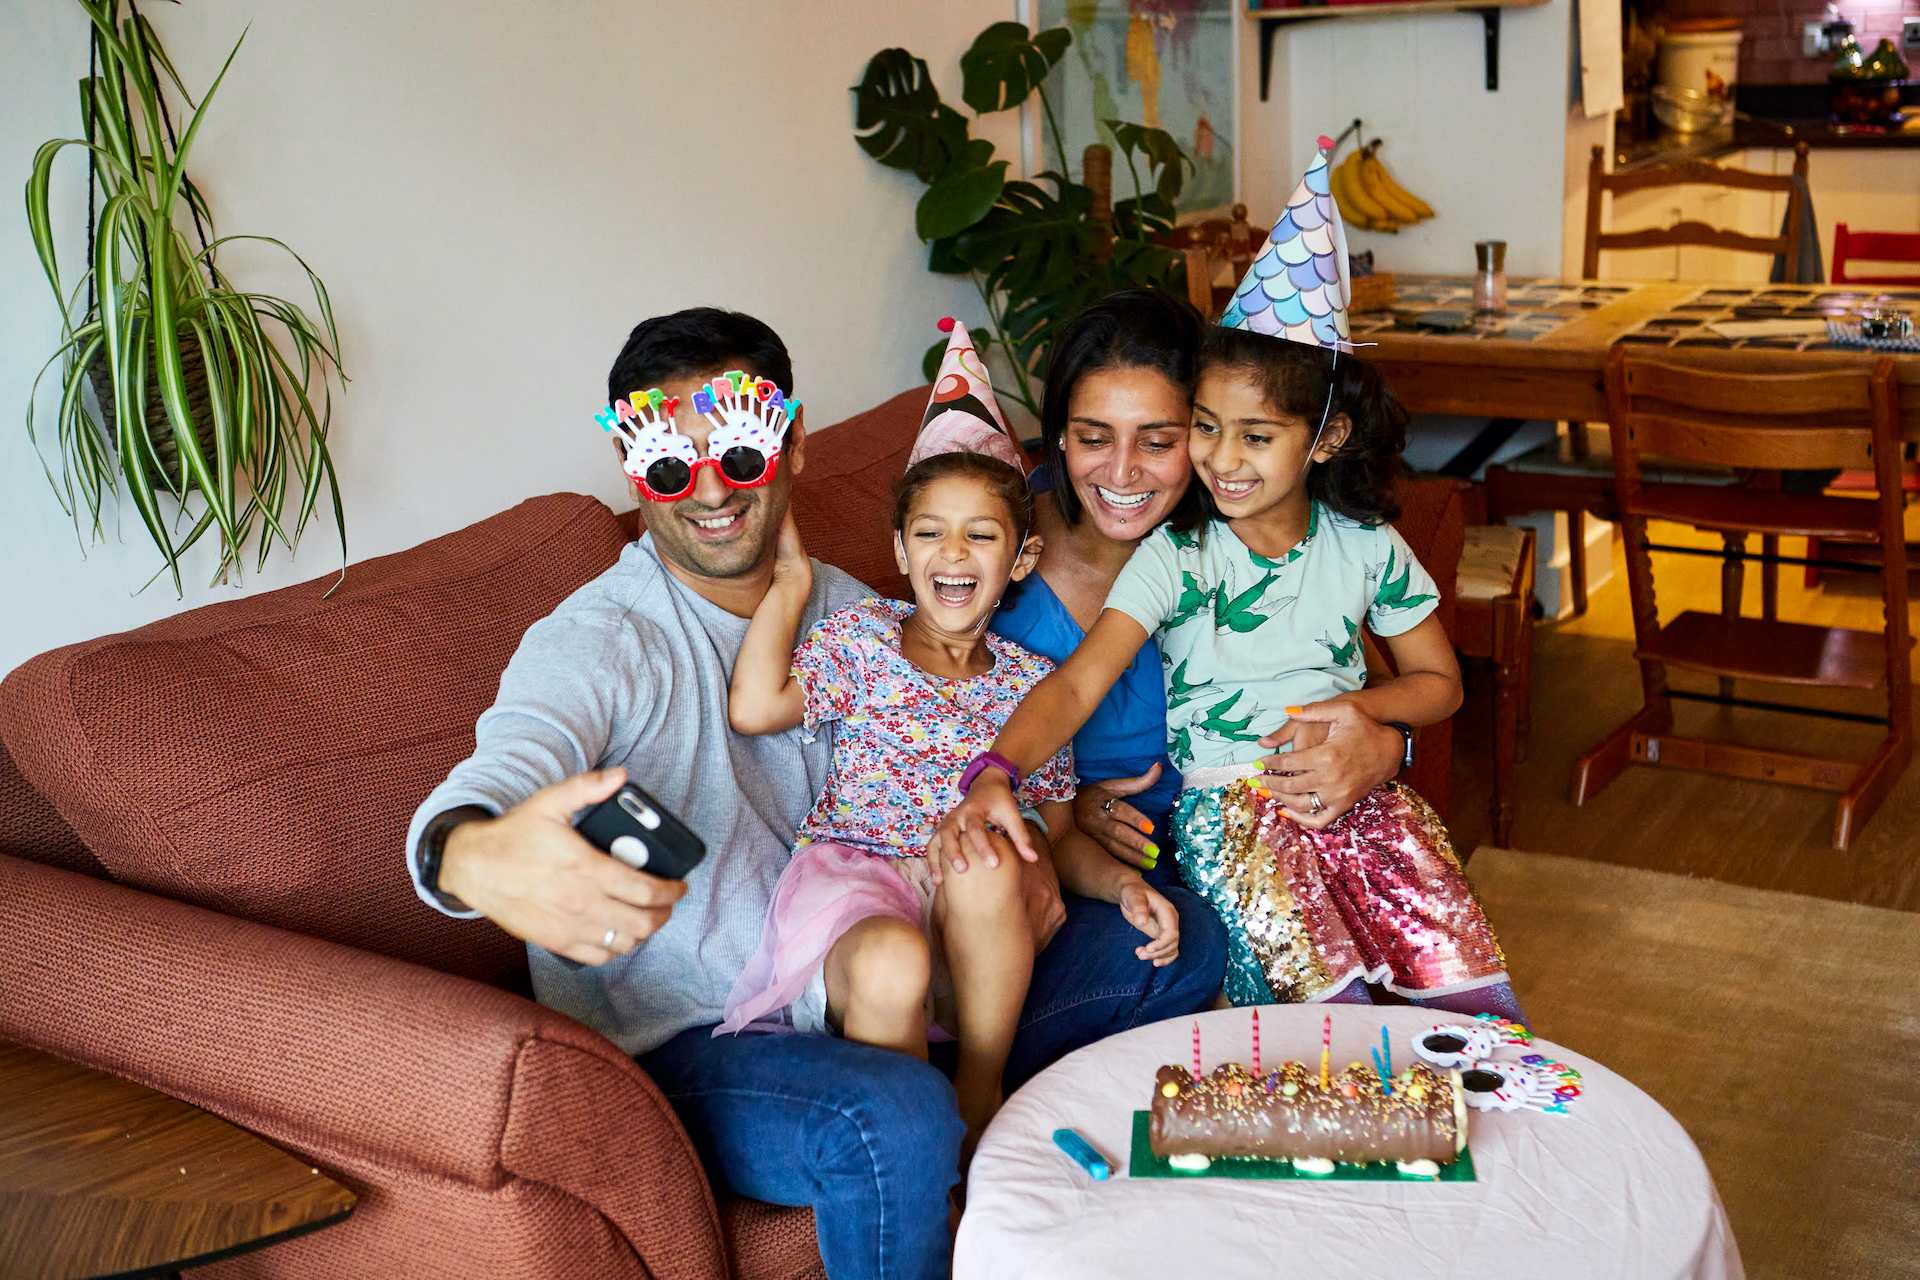 Una imagen de una familia riendo en una fiesta de cumpleaños